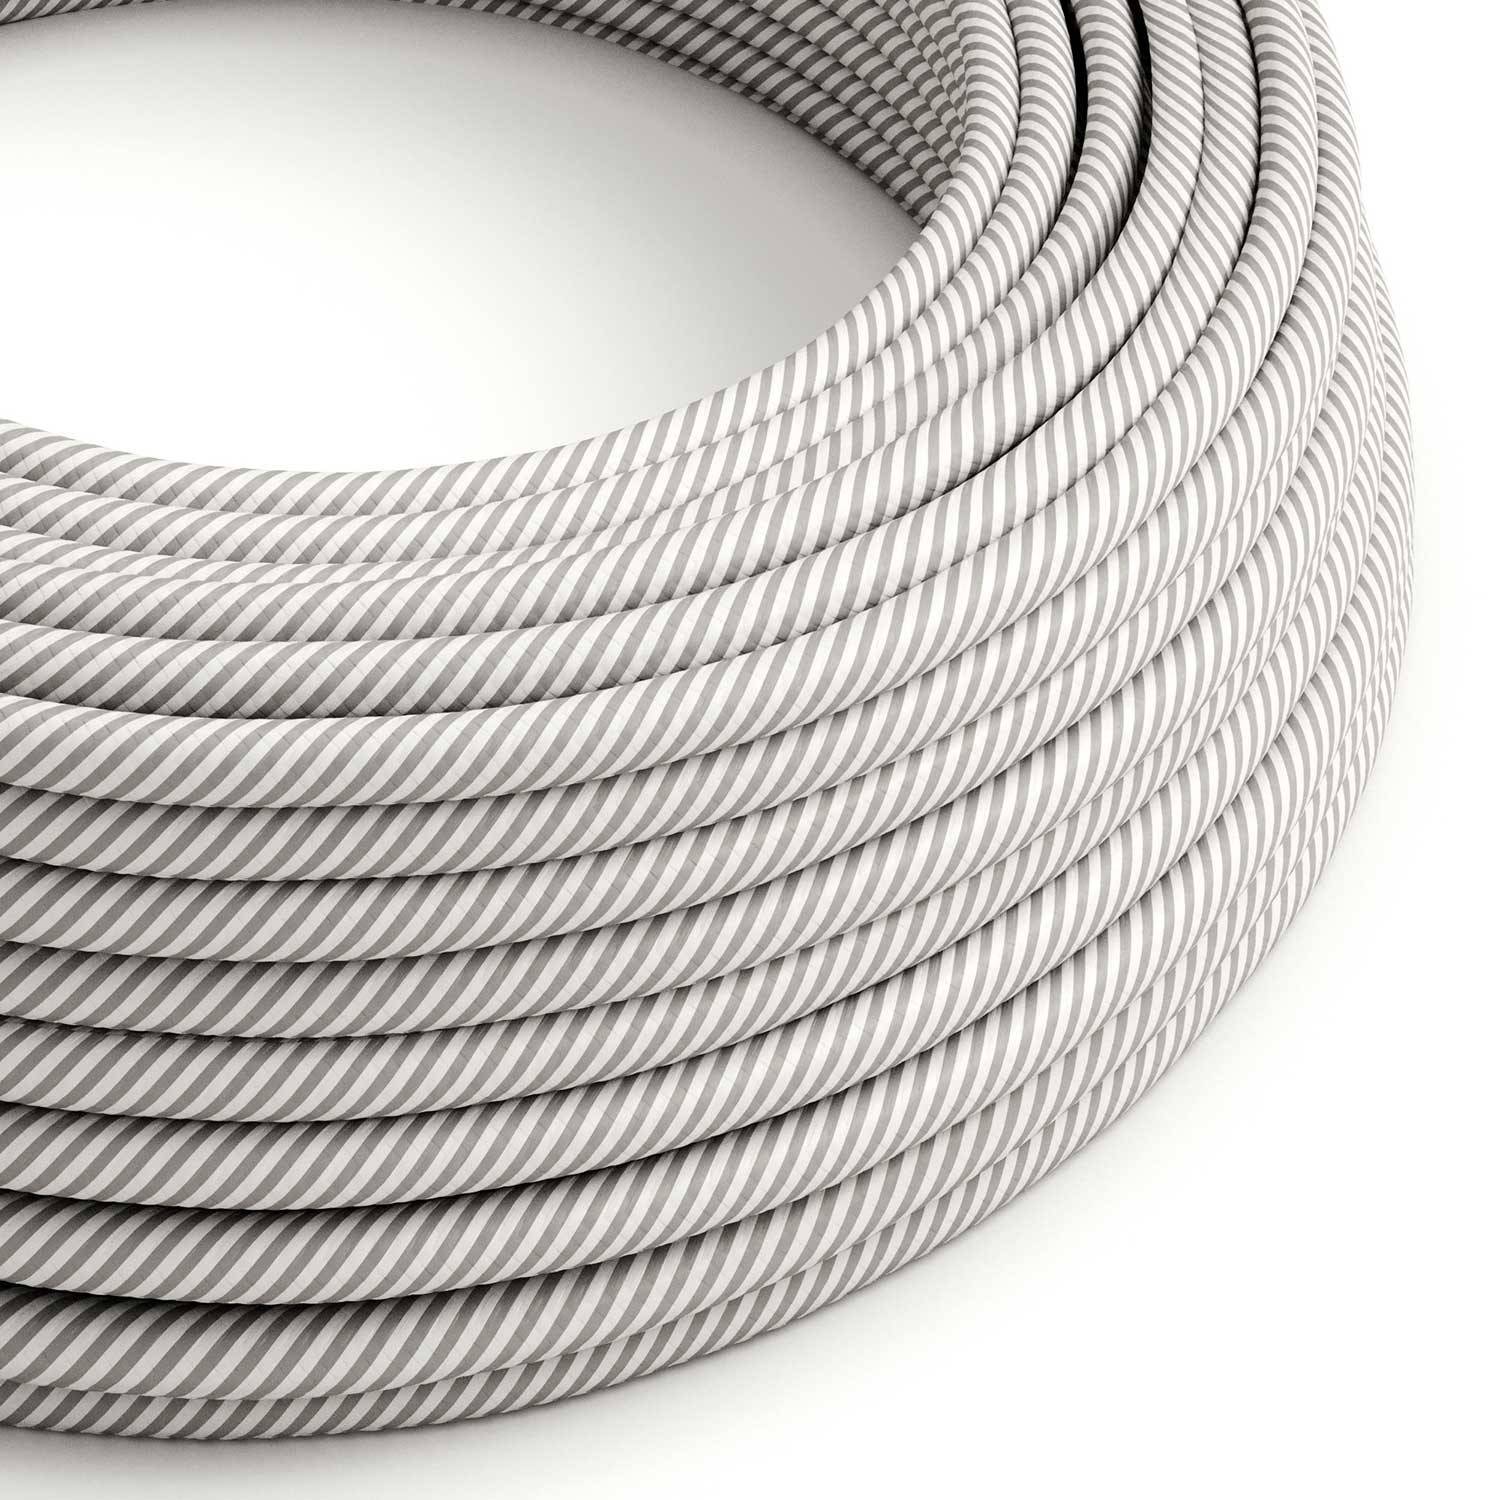 Glossy White and Aluminum Vertigo Textile Cable - The Original Creative-Cables - ERM46 round 2x0.75mm / 3x0.75mm